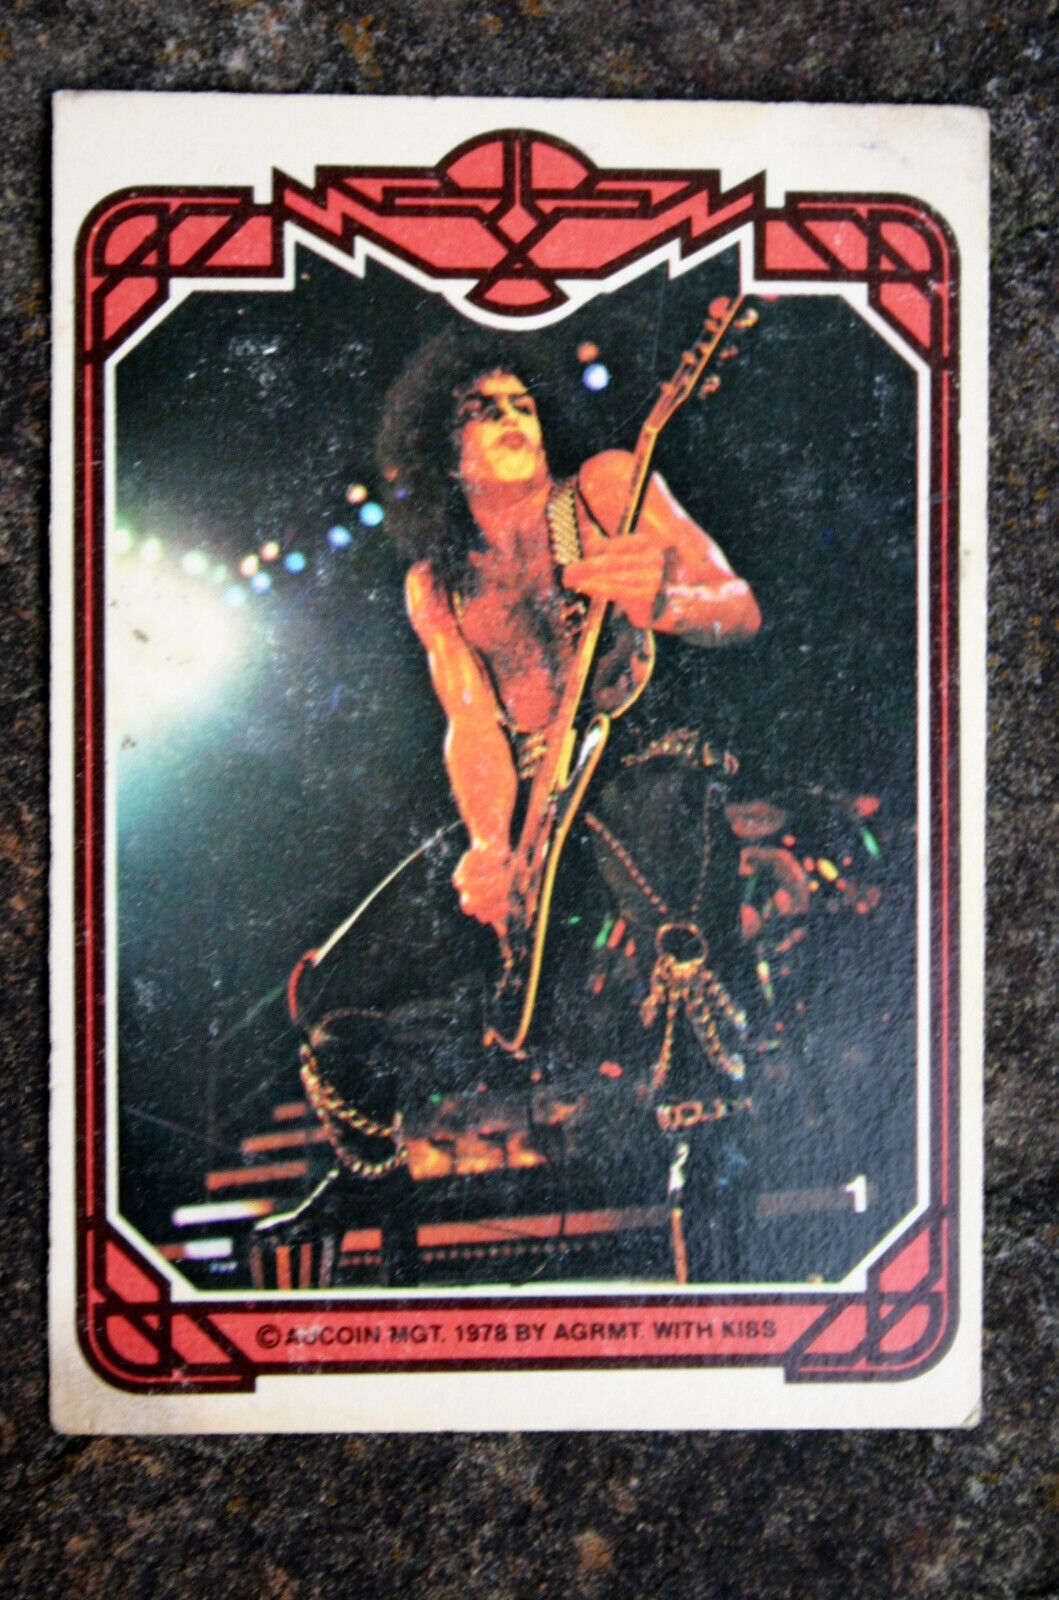 1978 Donruss Kiss Series 1 Card Aucoin Mgt #1 Paul Stanley